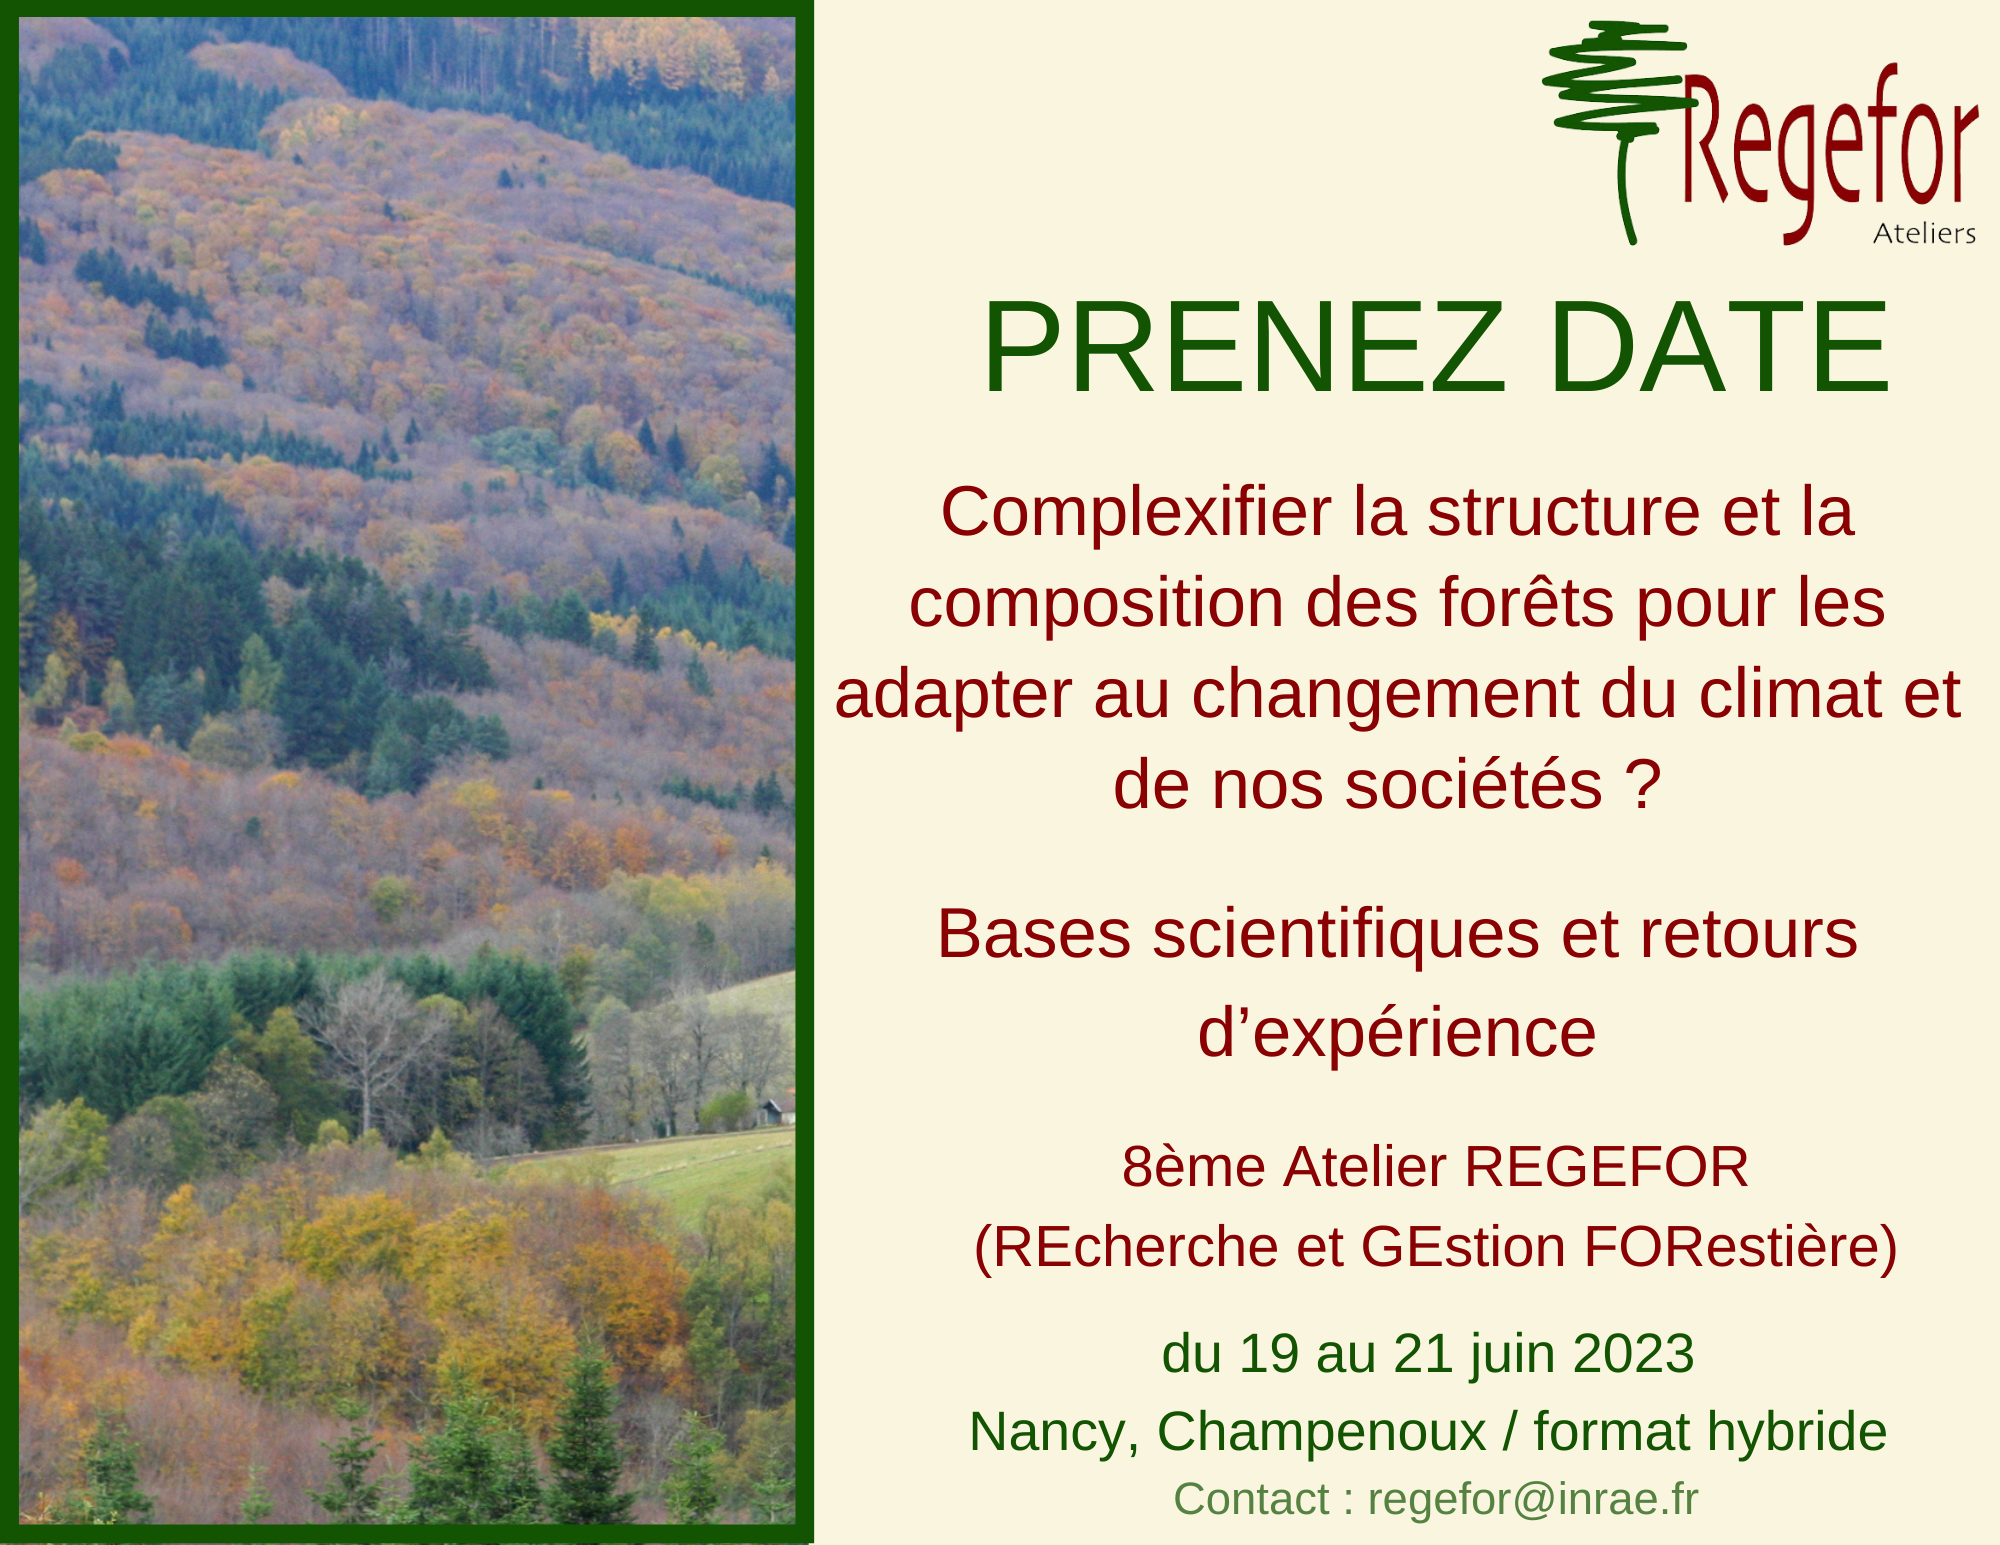 19-21 juin 2023 – 8e atelier REGEFOR "Complexifier la structure et la composition des forêts pour les adapter au changement du climat et de nos sociétés ?"